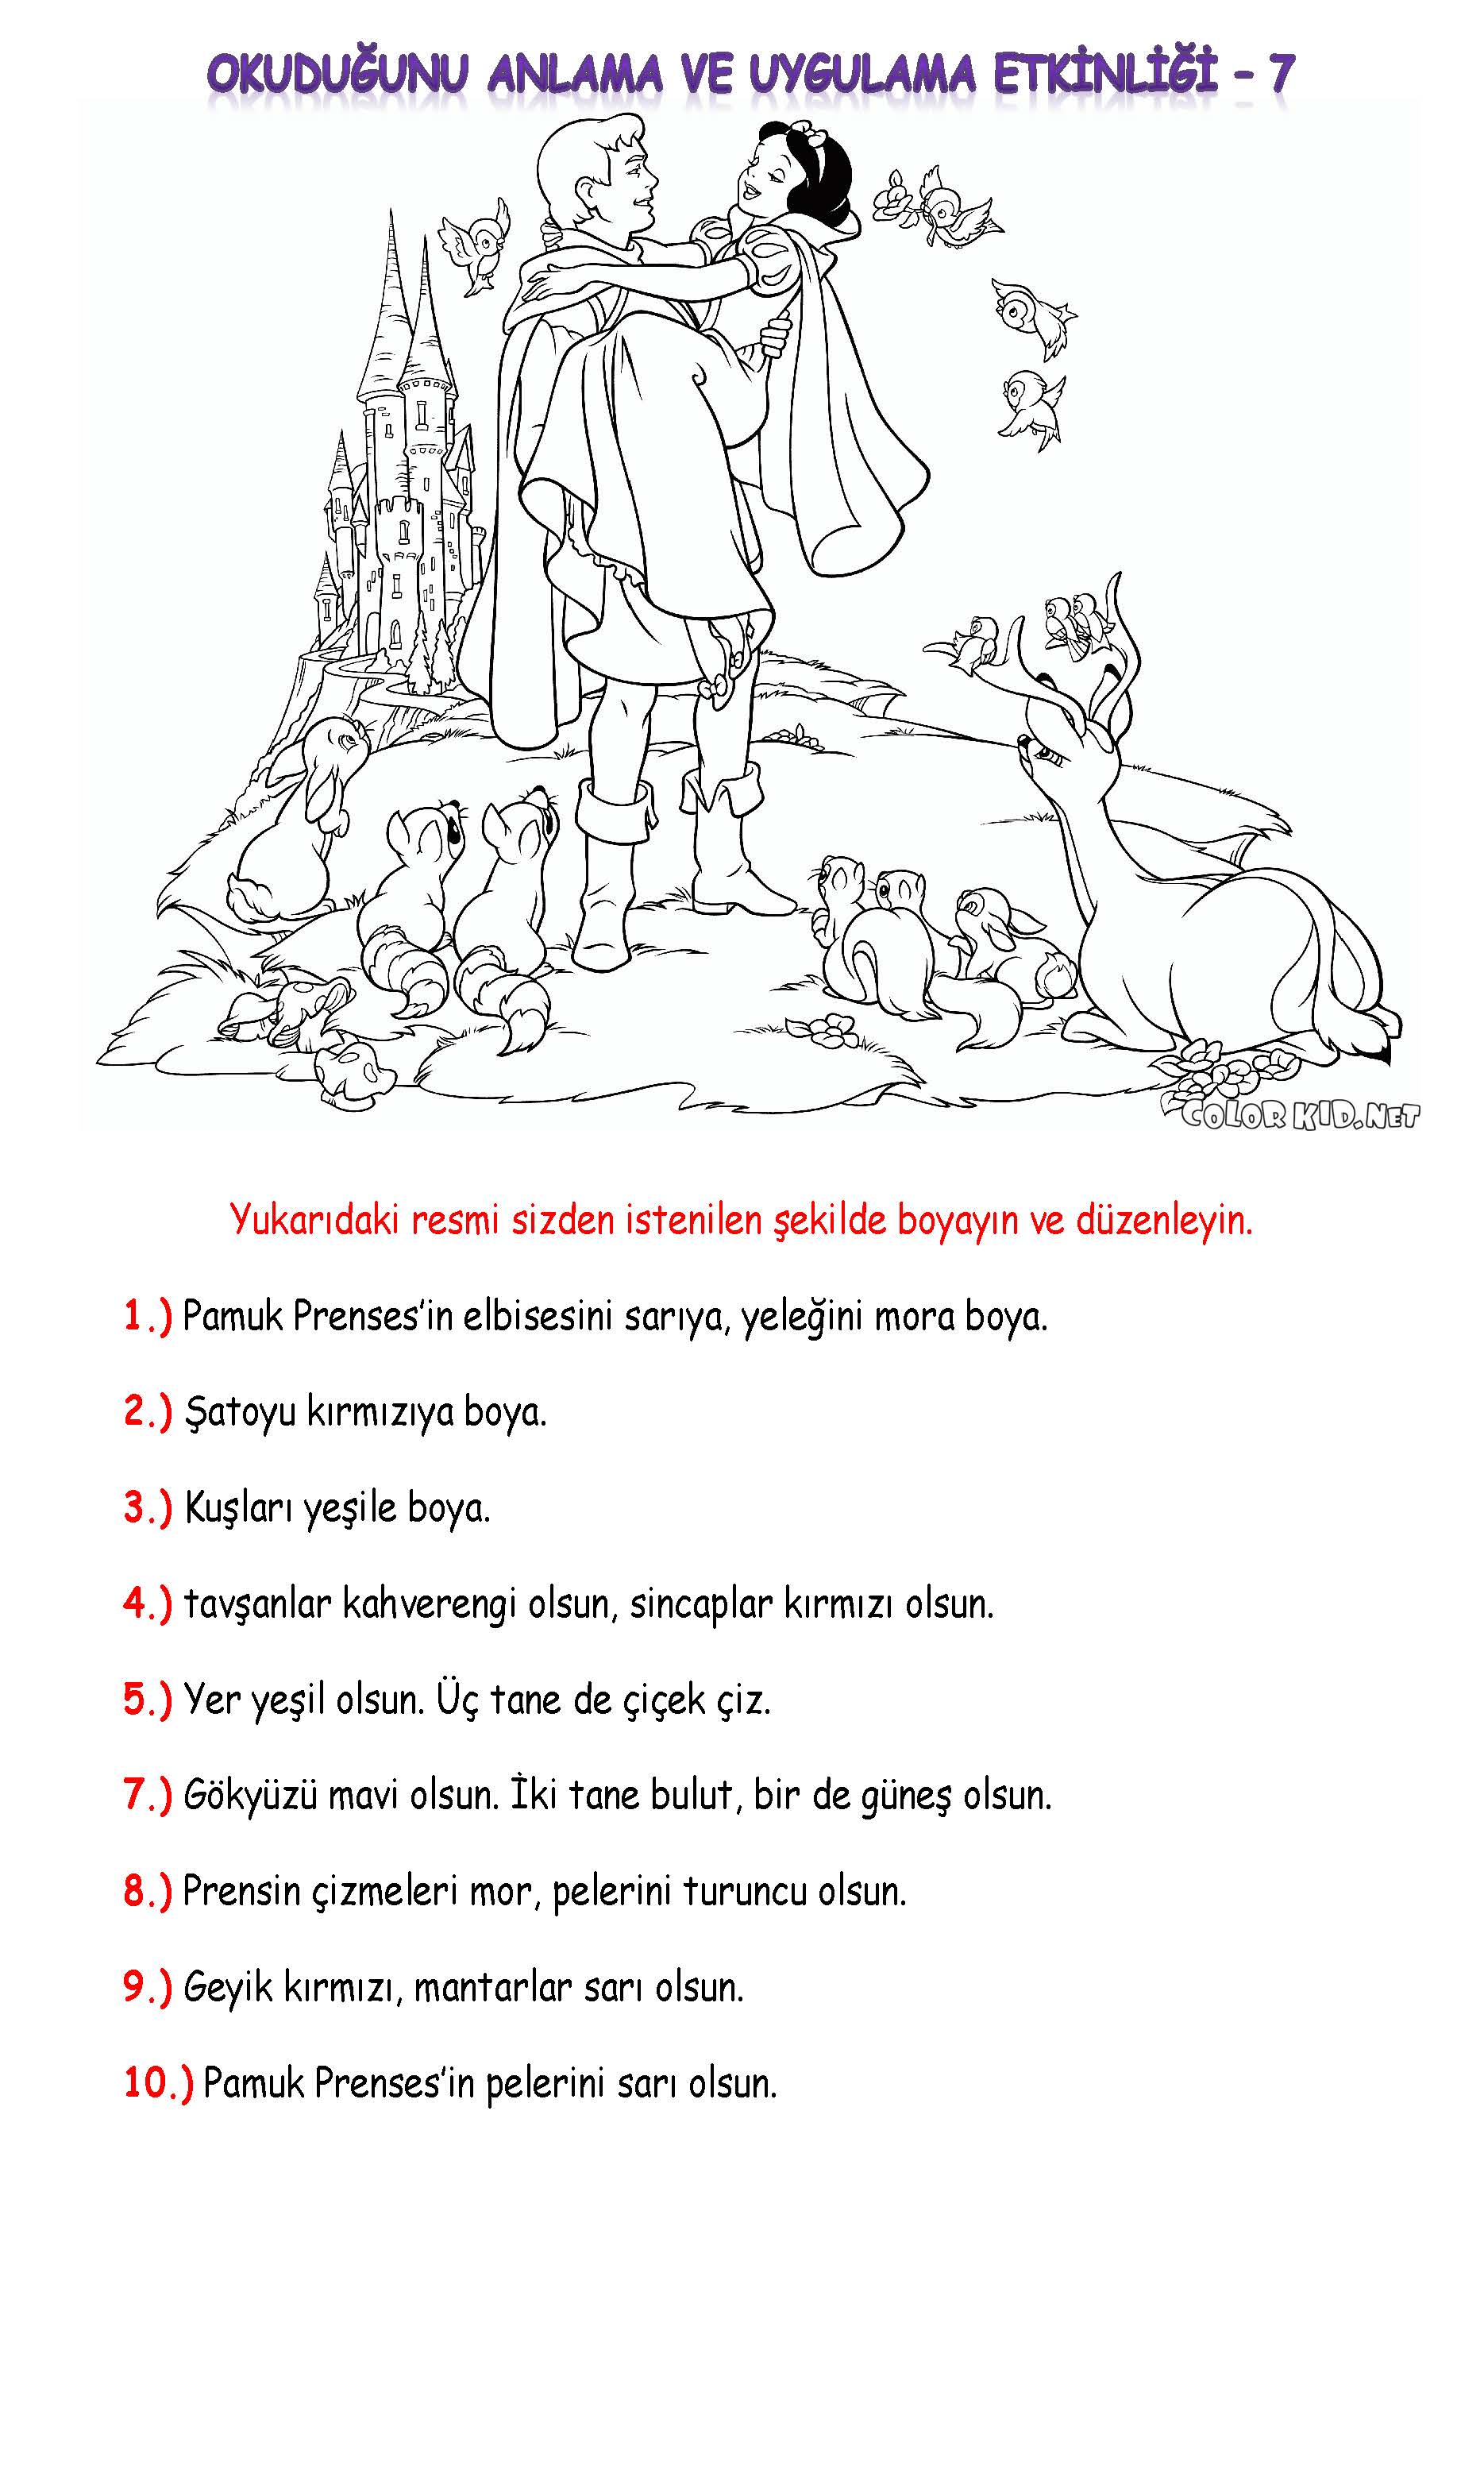 1. Sınıf Türkçe Okuduğunu Anlama ve Uygulama Etkinliği-7